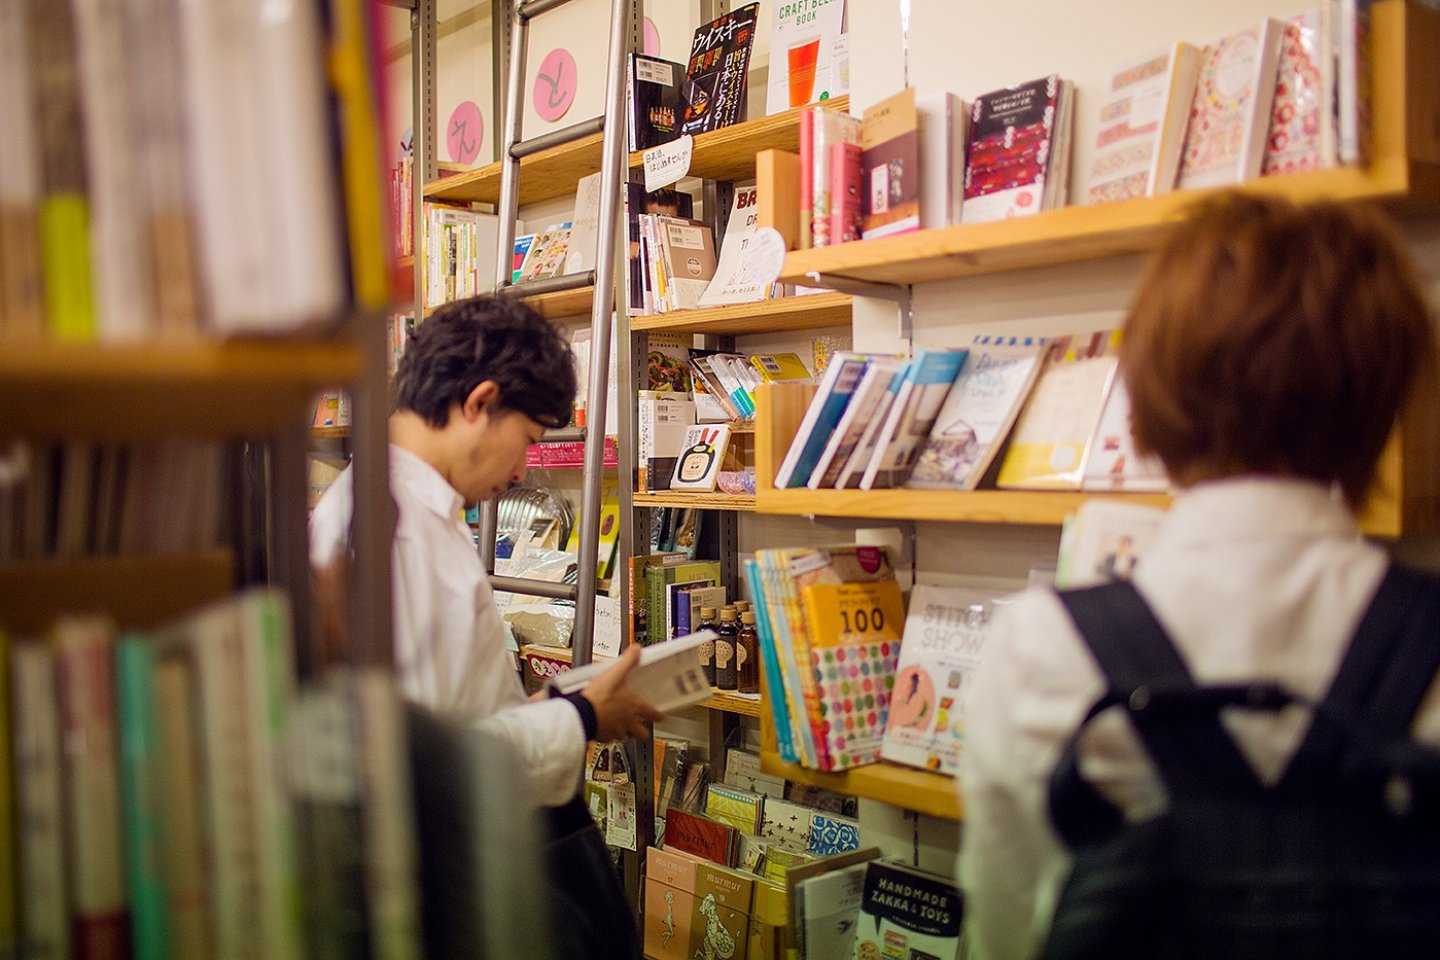 Hiệu sách được chia thành ba gian - sách, tiệm cà phê, và quà tặng - và là một trong những nơi sưu tập sách tốt nhất về các chủ đề đặc biệt thú vị mà bạn có thể tìm thấy ở Nhật Bản.